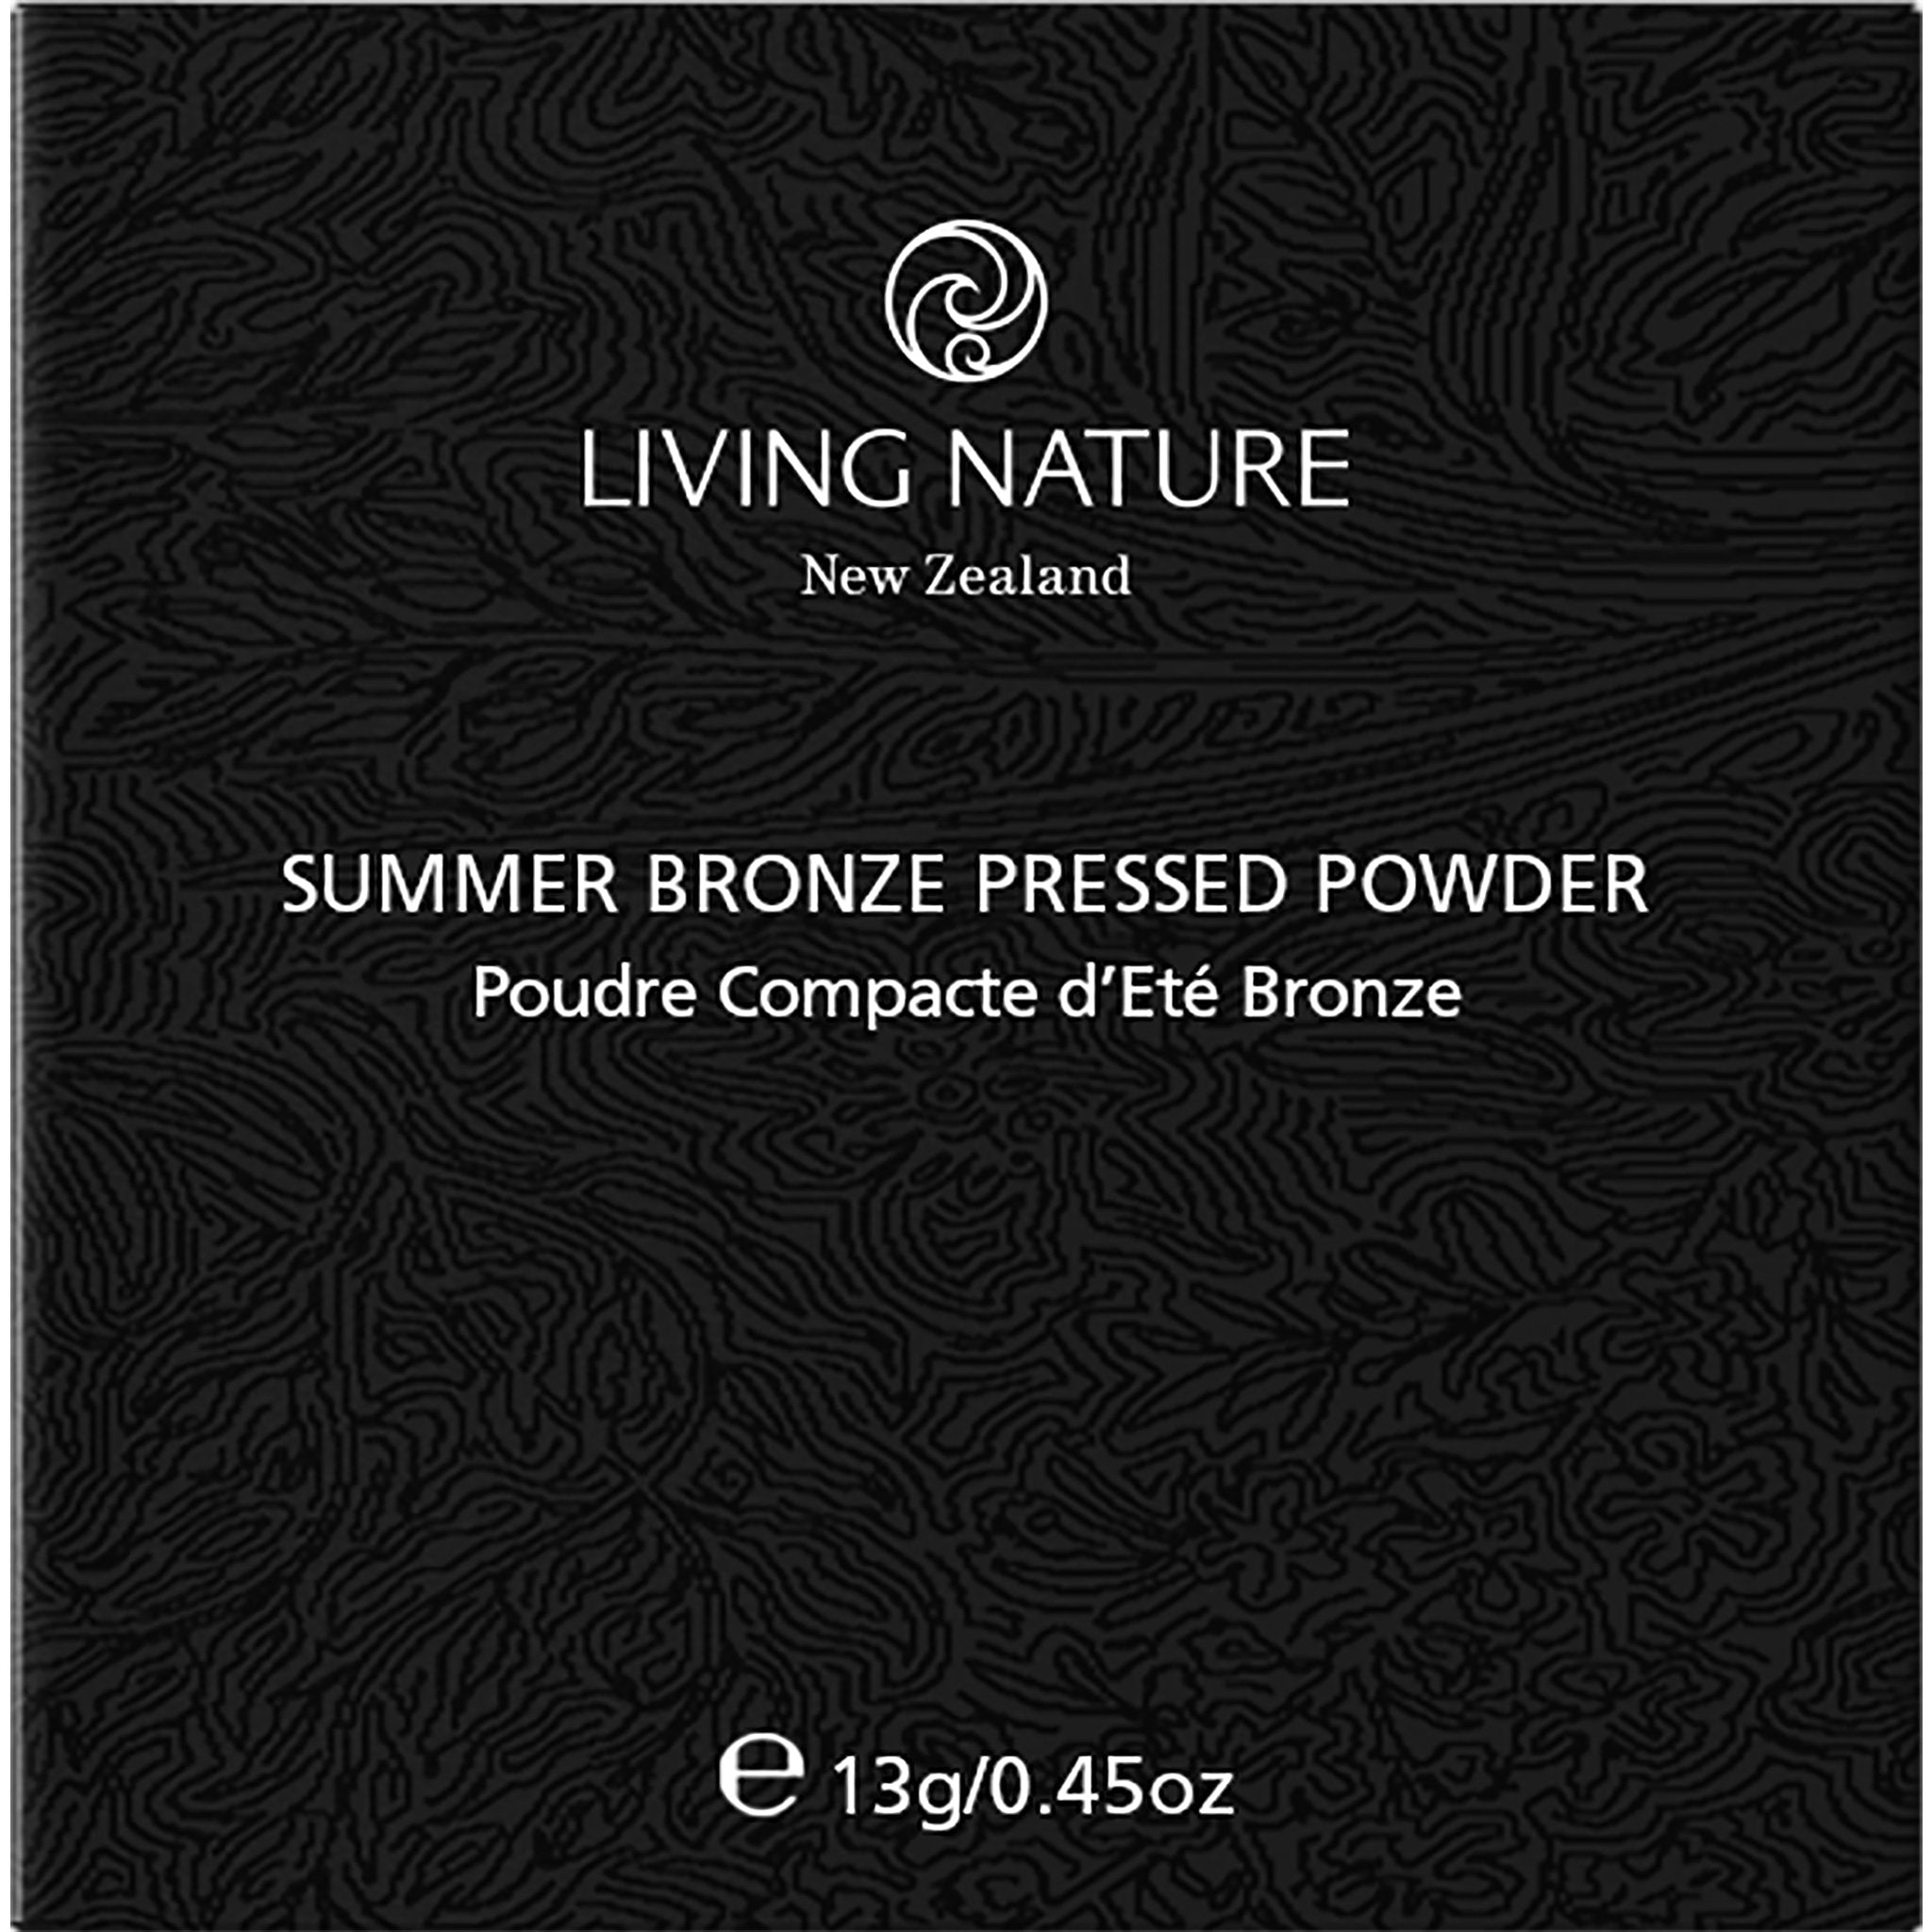 Summer Bronze Pressed Powder - mypure.co.uk